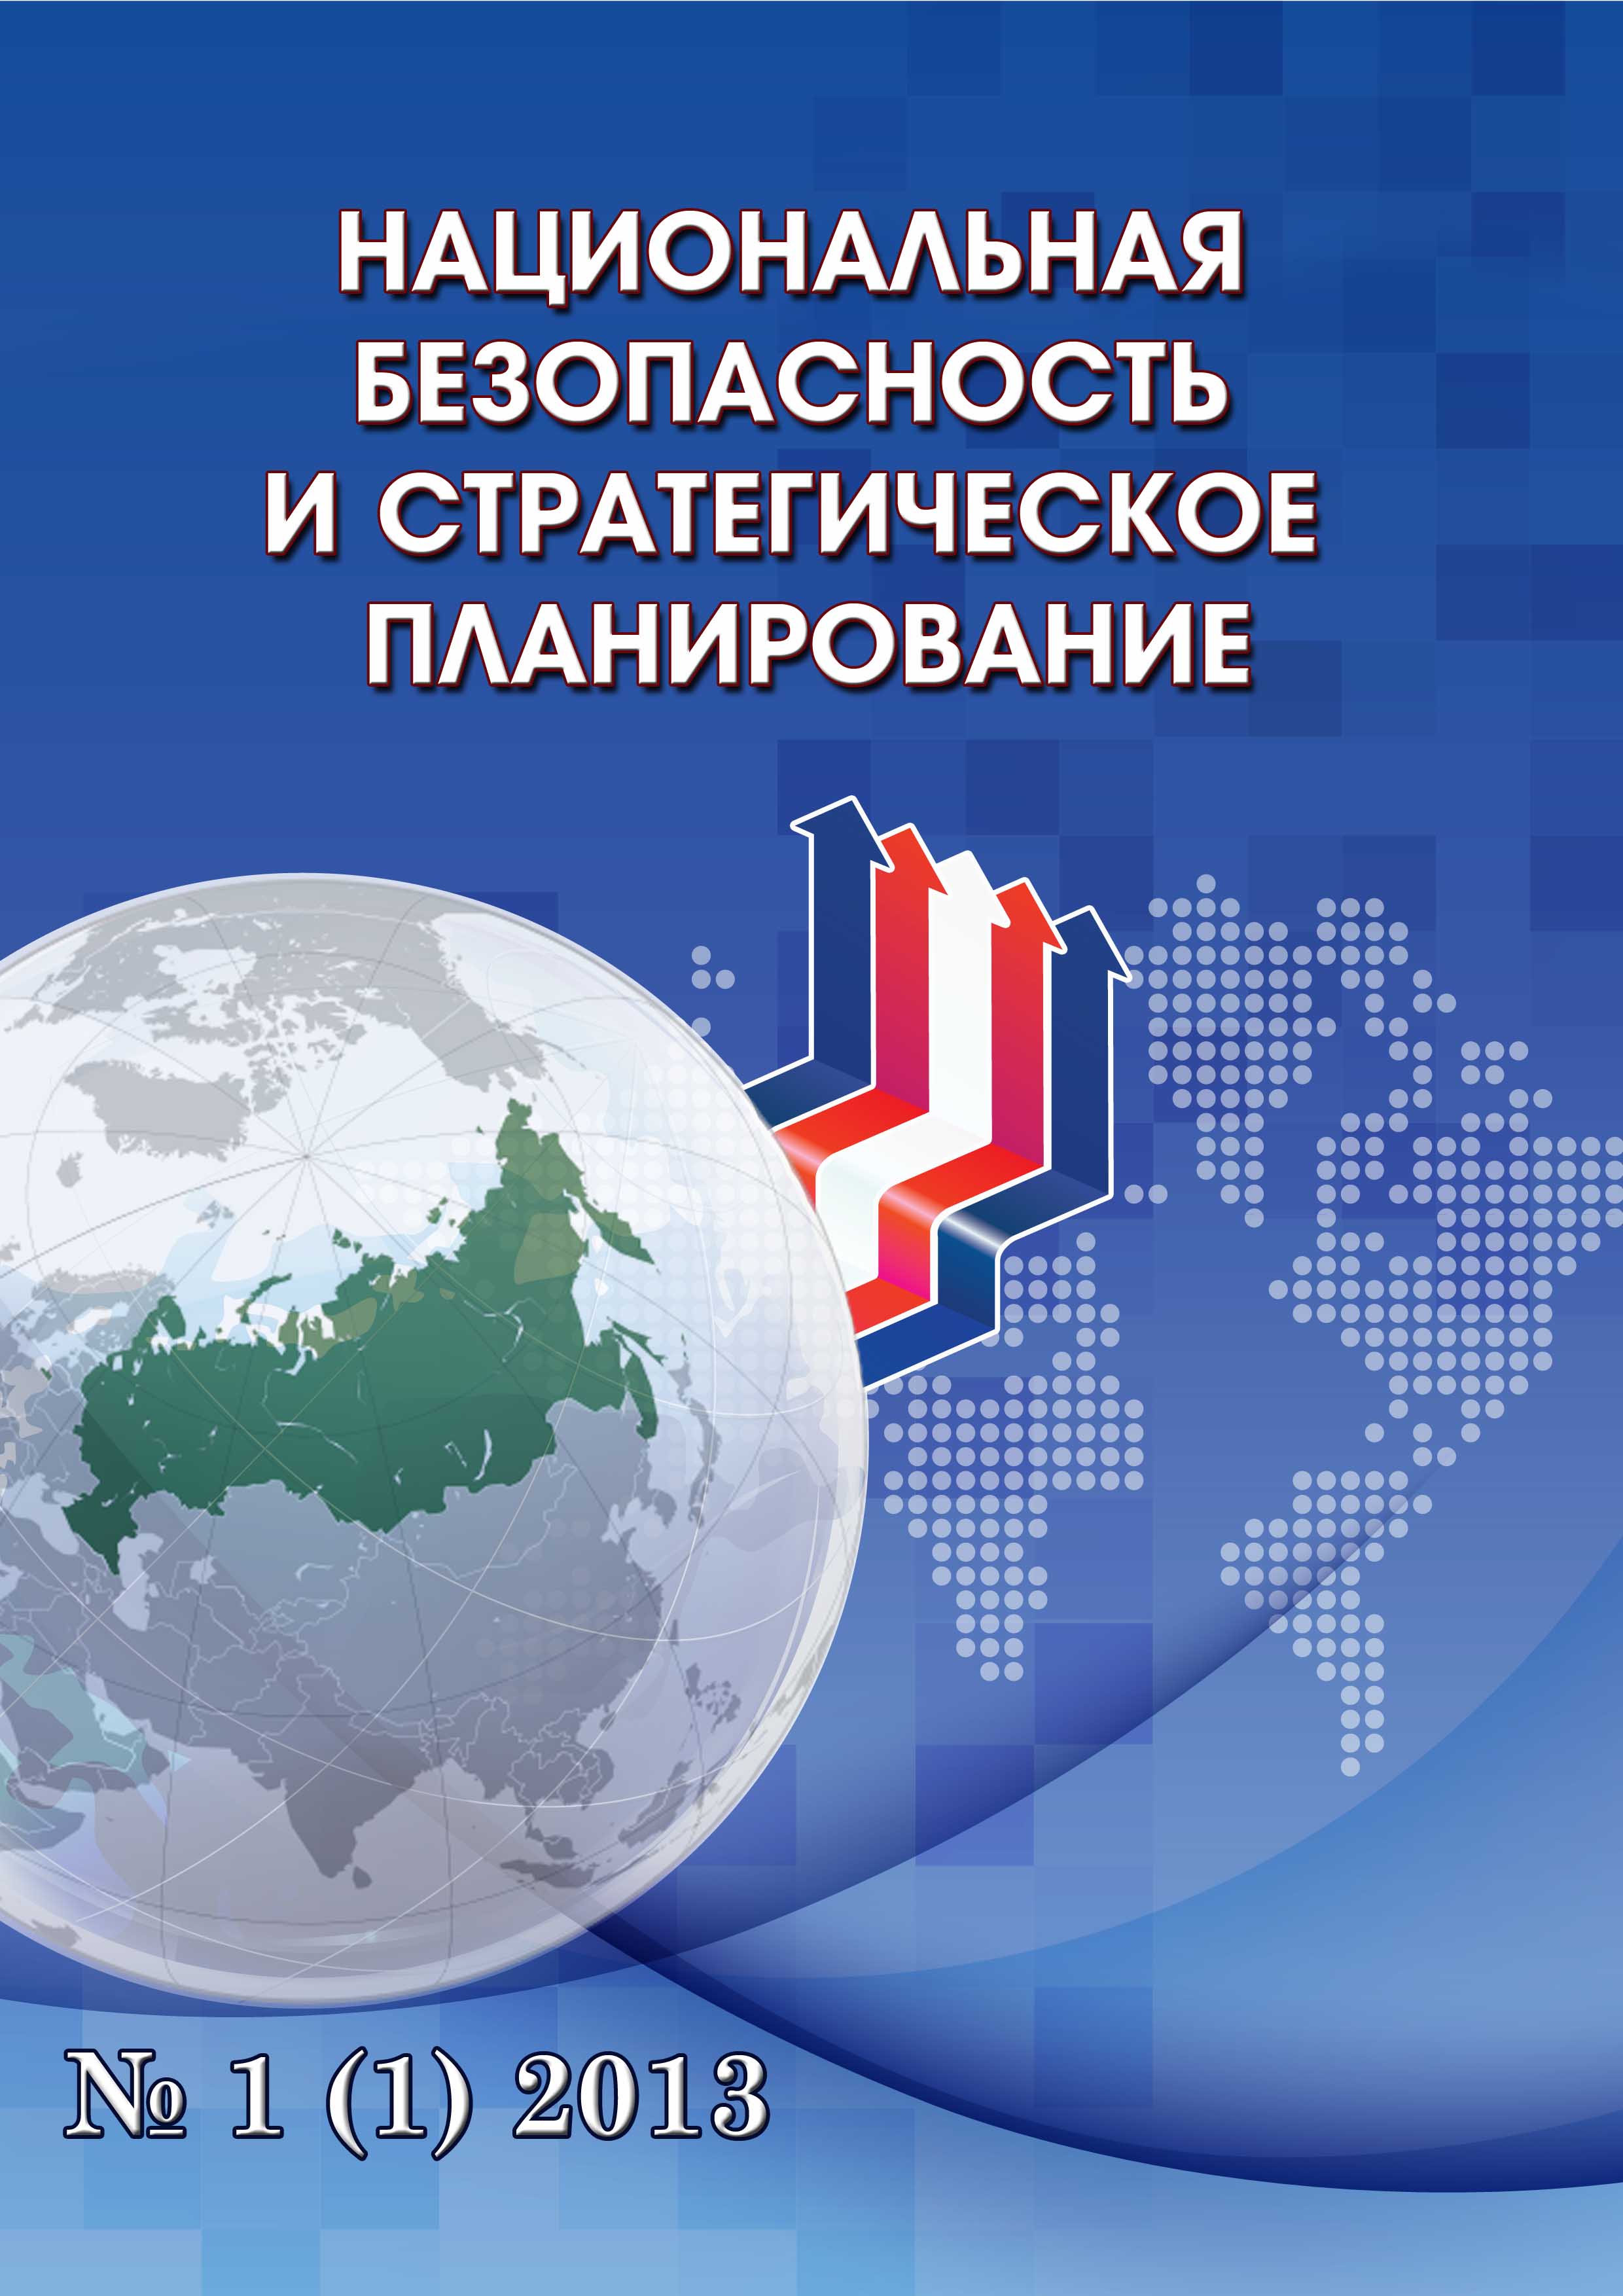             Технологическая безопасность как главный стратегический приоритет Союзного государства Беларуси и России
    